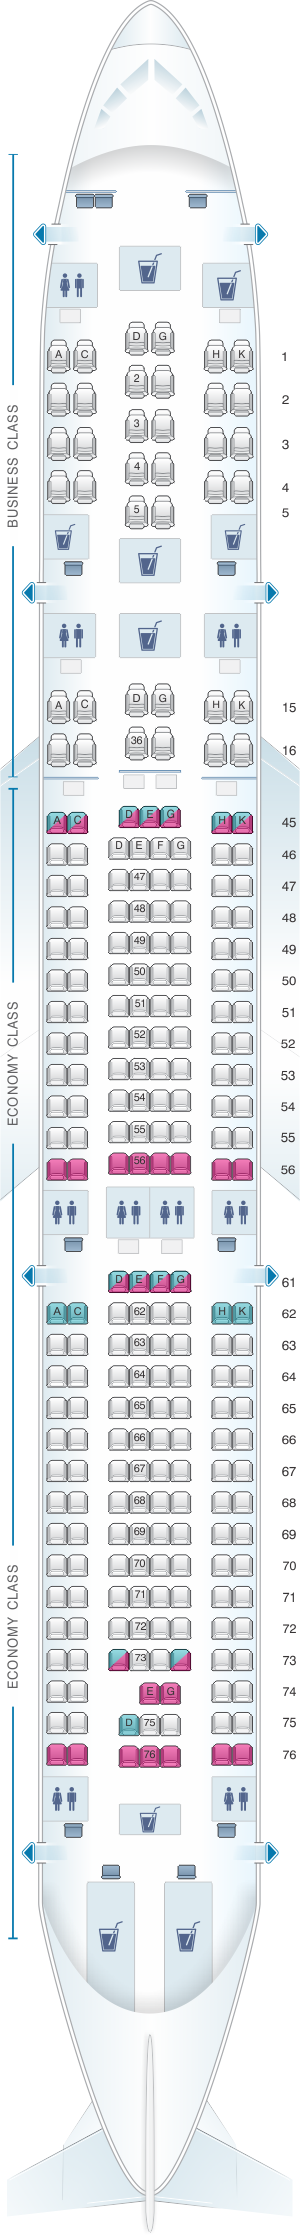 Airbus A340 Seating Plan